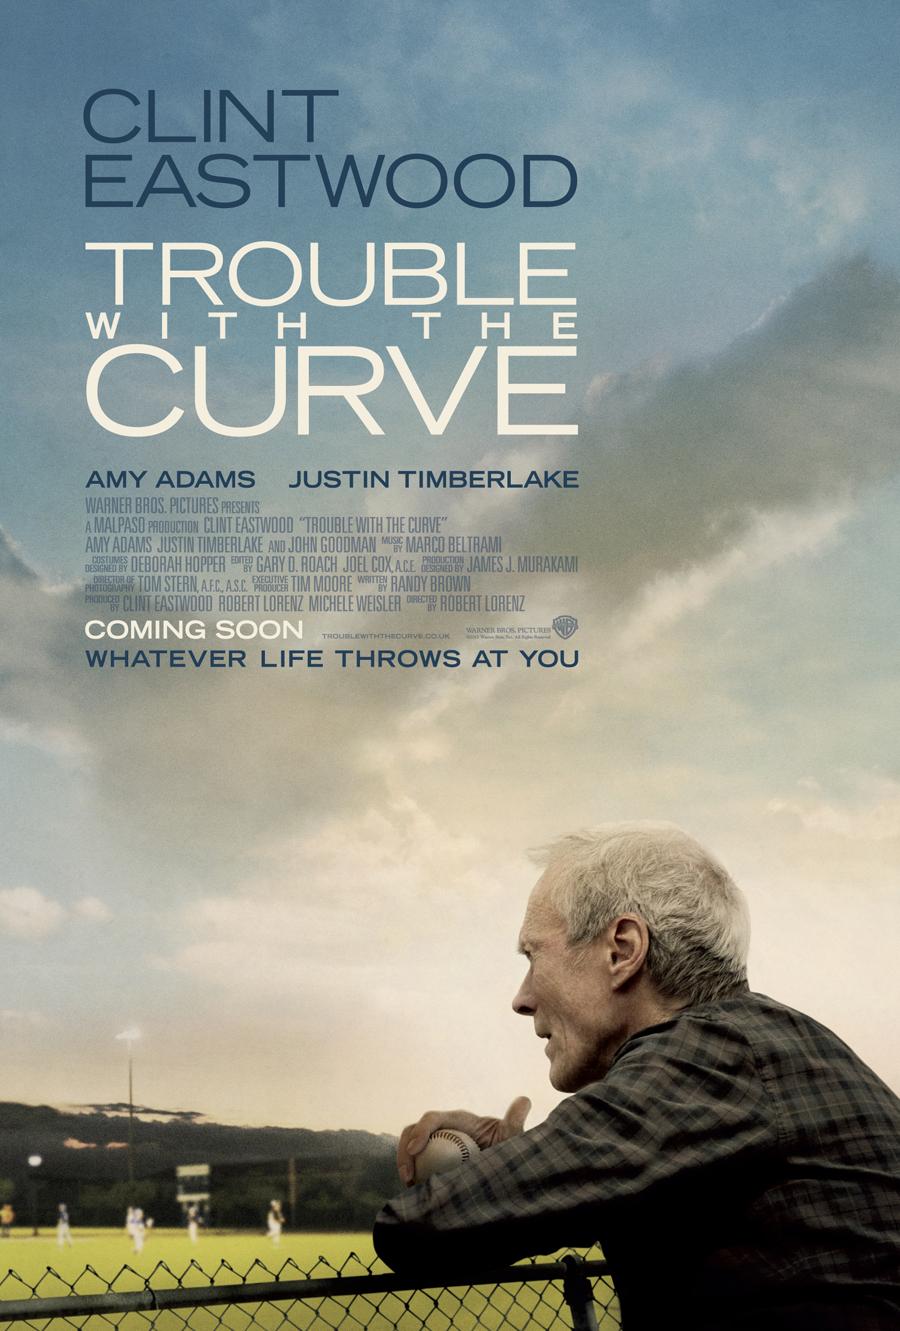 [News] Trouble with the curve, avec Clint Eastwood : bande-annonce et affiche !